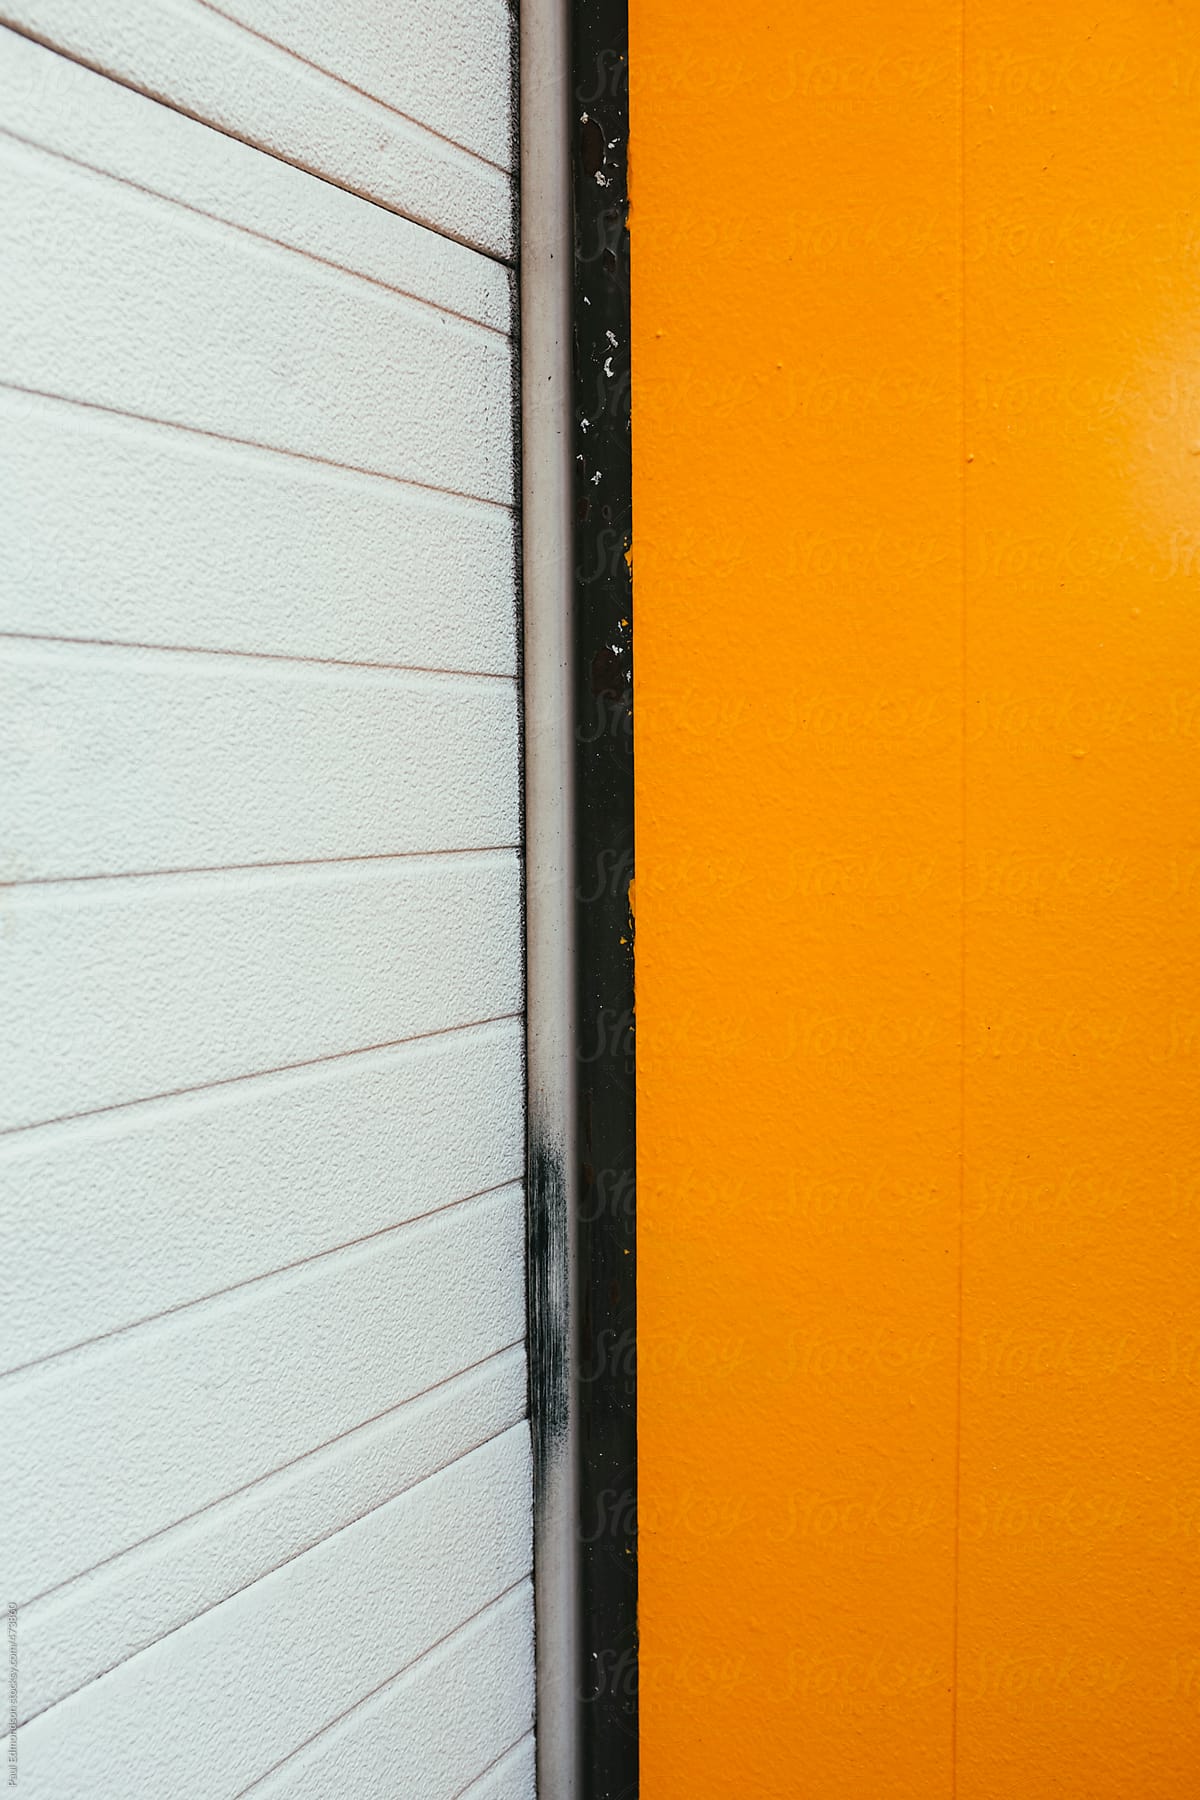 Detail of orange building wall and garage door